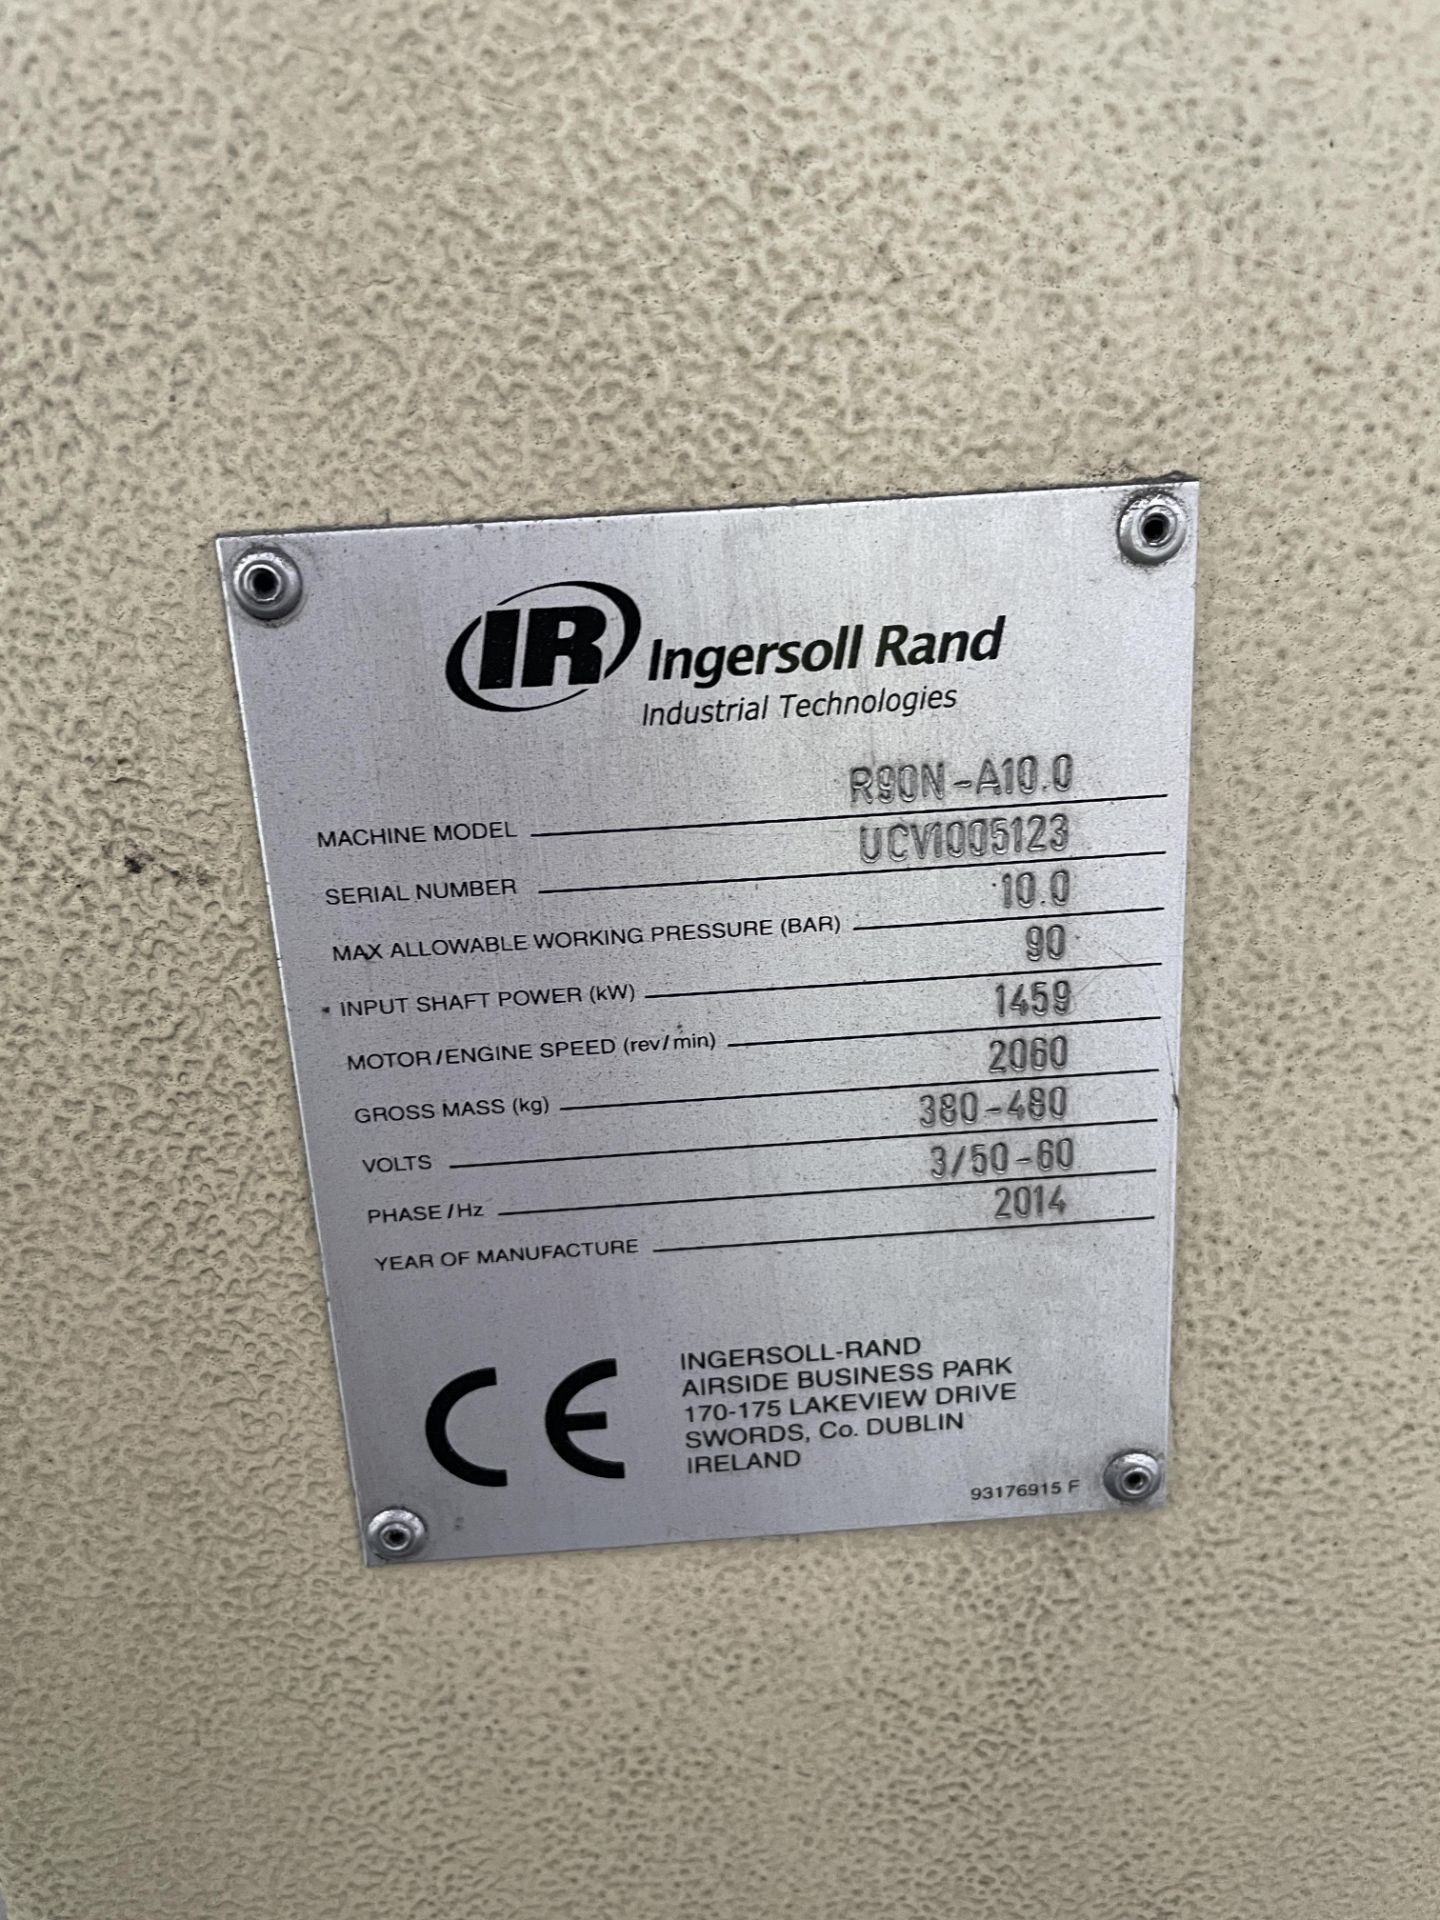 Ingersoll Rand R90N-A10.0 Nirvana VSD Premium Efficiency Packaged Air Compressor, serial no. - Image 3 of 3